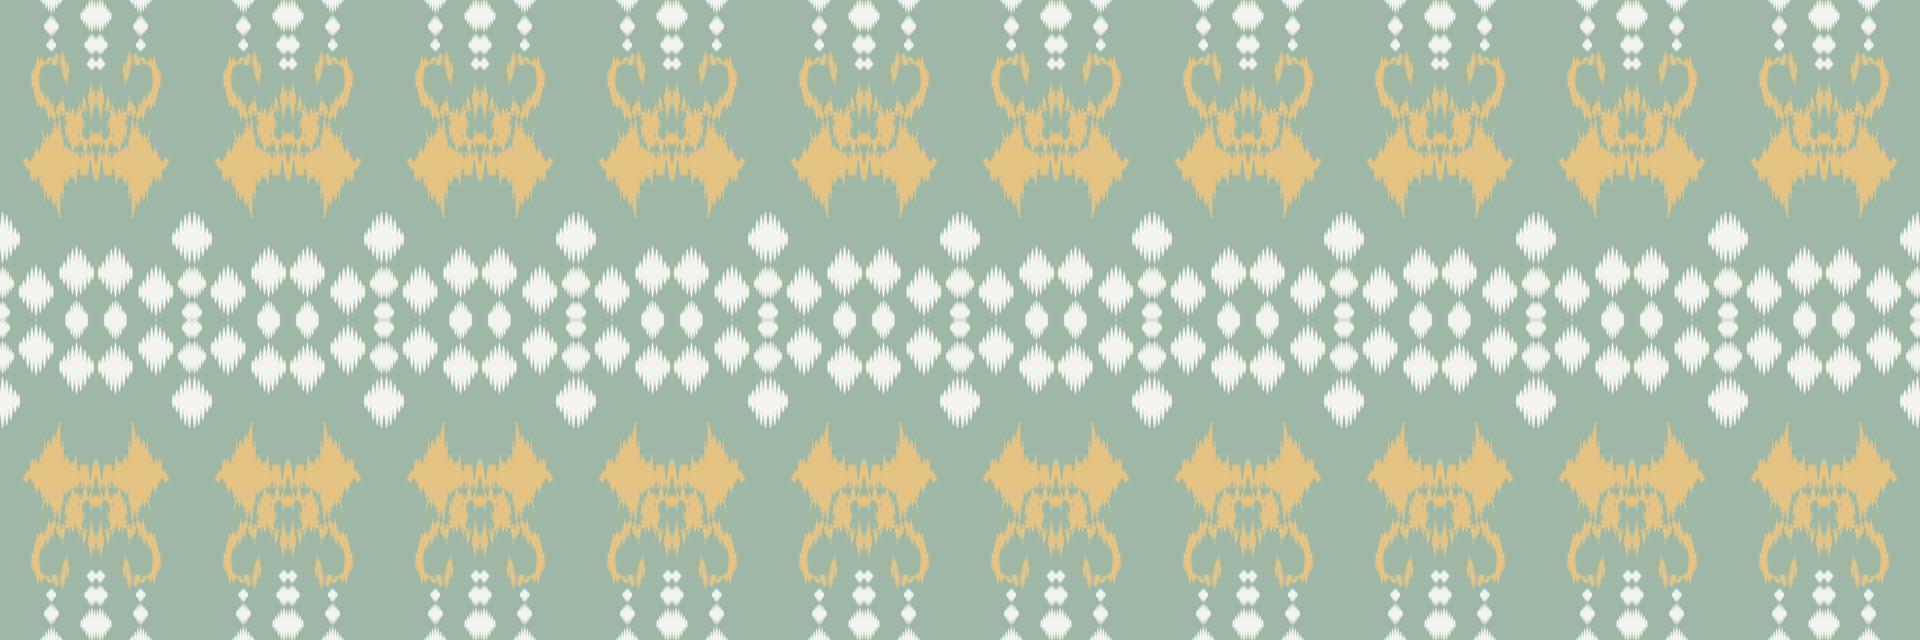 ikat nahtloses stammes-aztekisches nahtloses muster. ethnische geometrische ikkat batik digitaler vektor textildesign für drucke stoff saree mughal pinsel symbol schwaden textur kurti kurtis kurtas